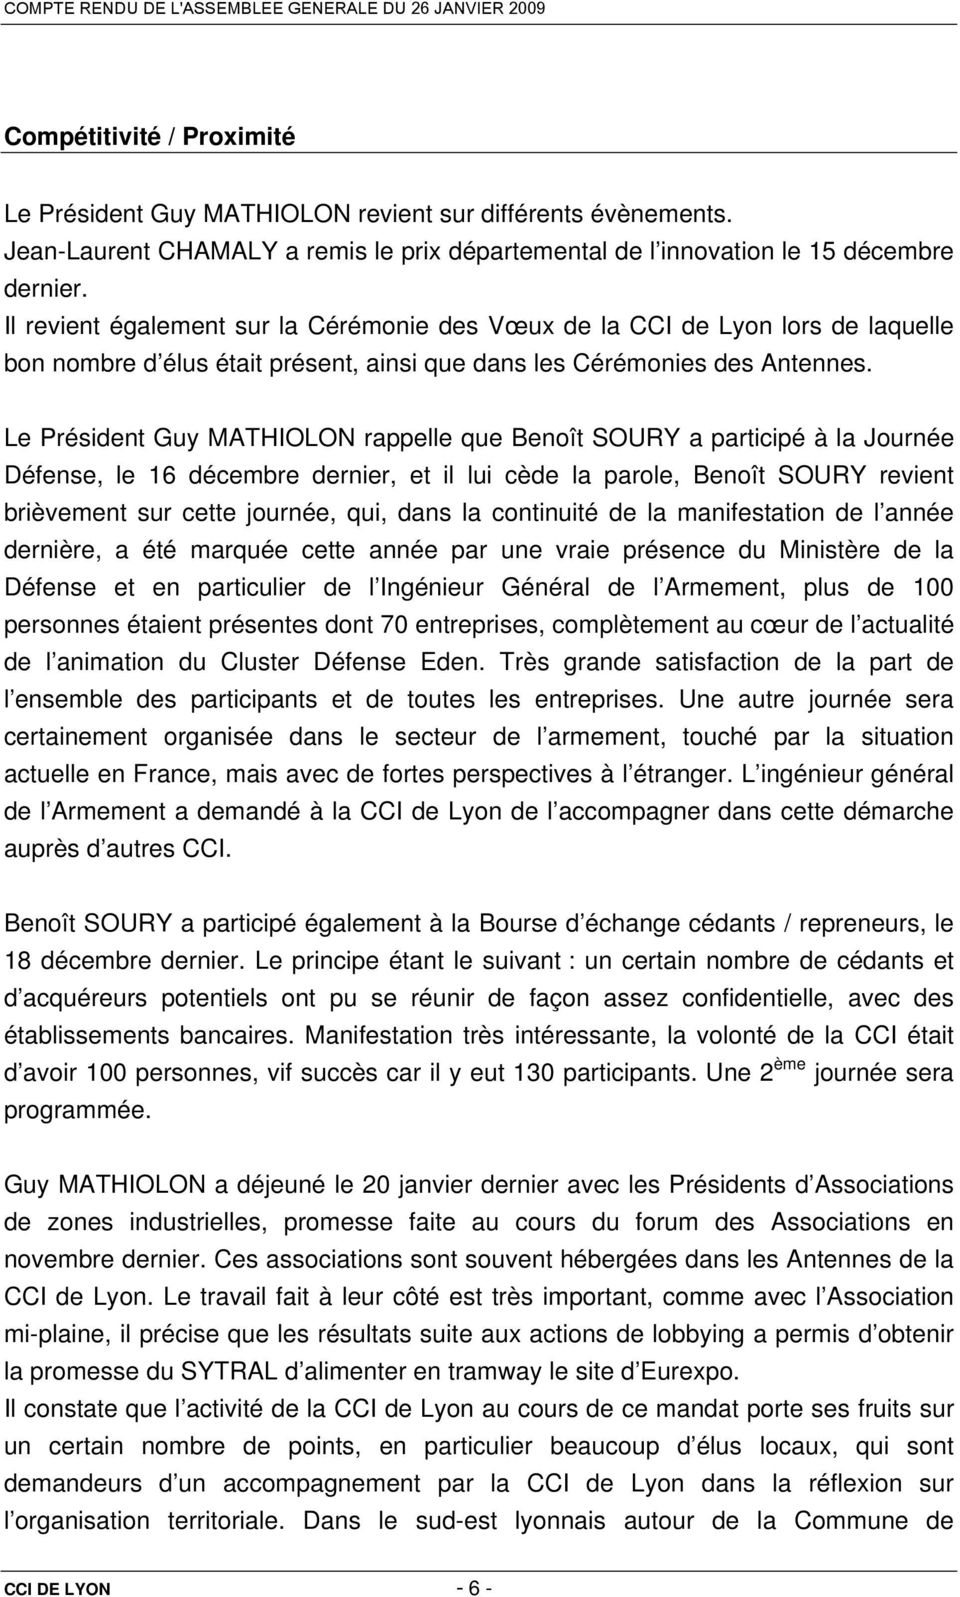 Le Président Guy MATHIOLON rappelle que Benoît SOURY a participé à la Journée Défense, le 16 décembre dernier, et il lui cède la parole, Benoît SOURY revient brièvement sur cette journée, qui, dans